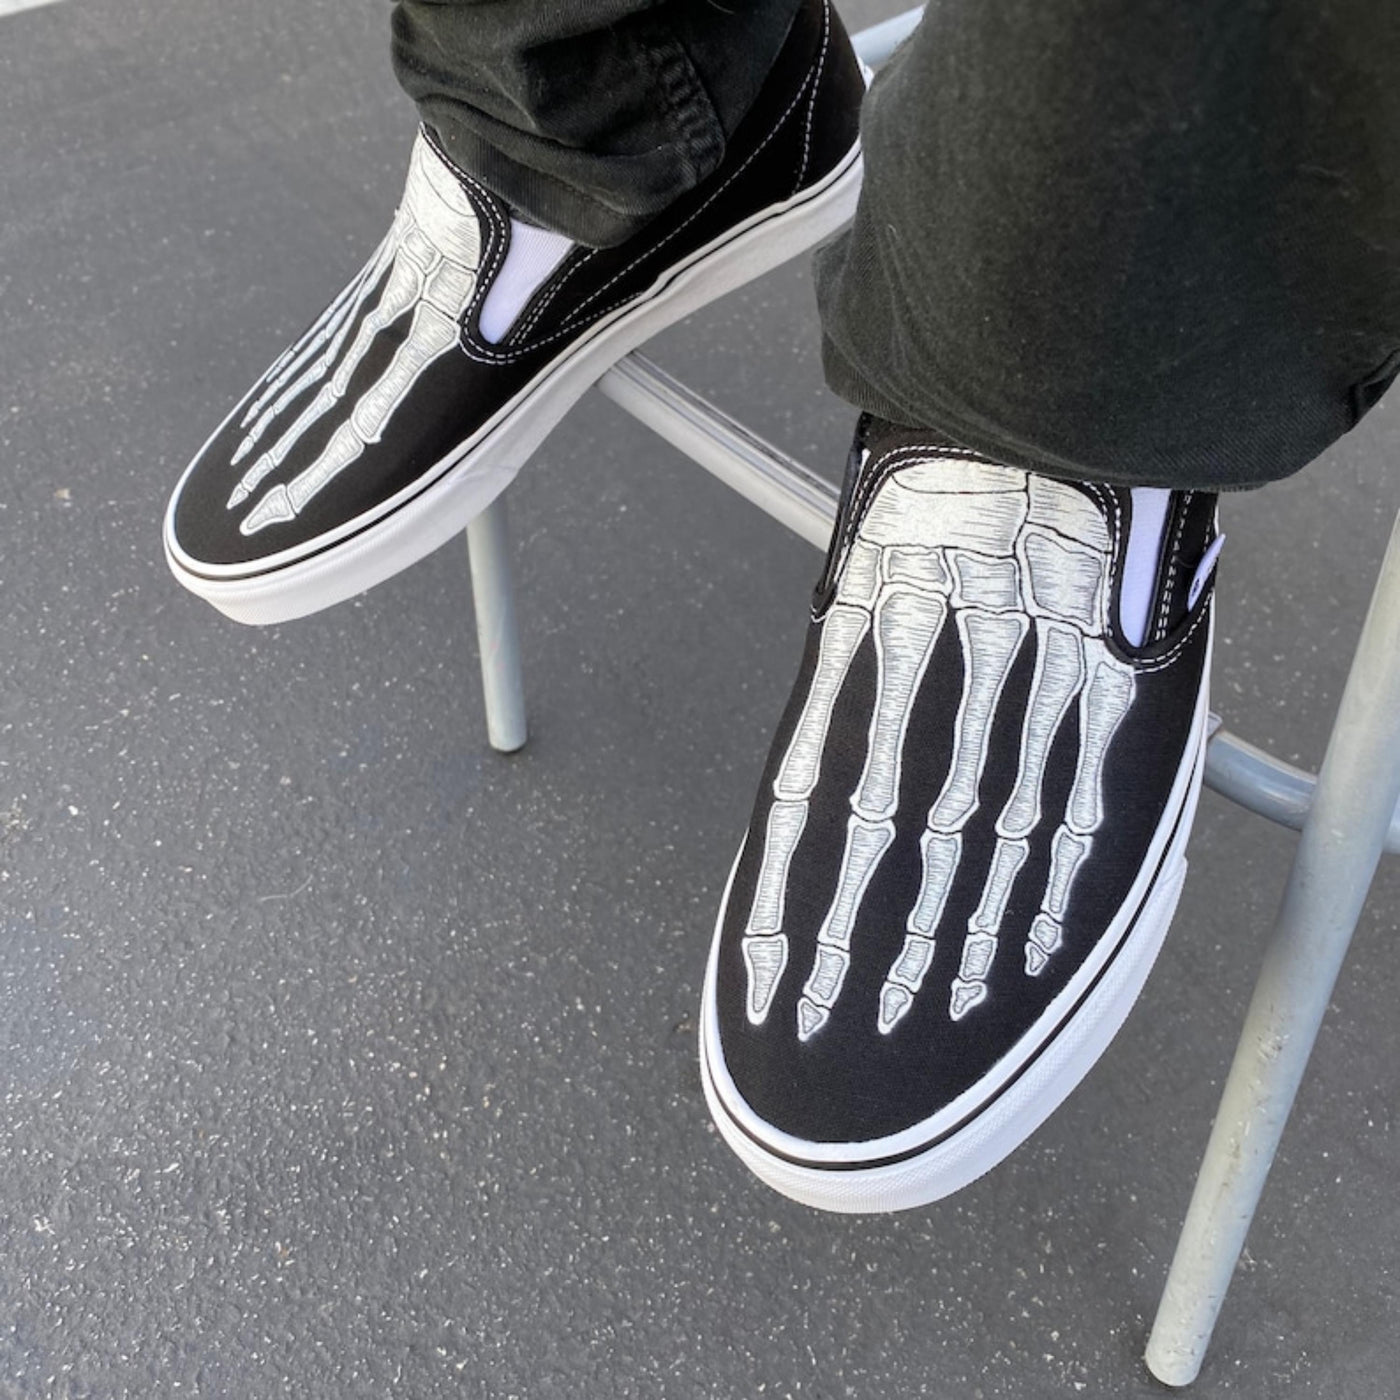 Skeleton Boney Feet Custom Vans Slip On Shoes